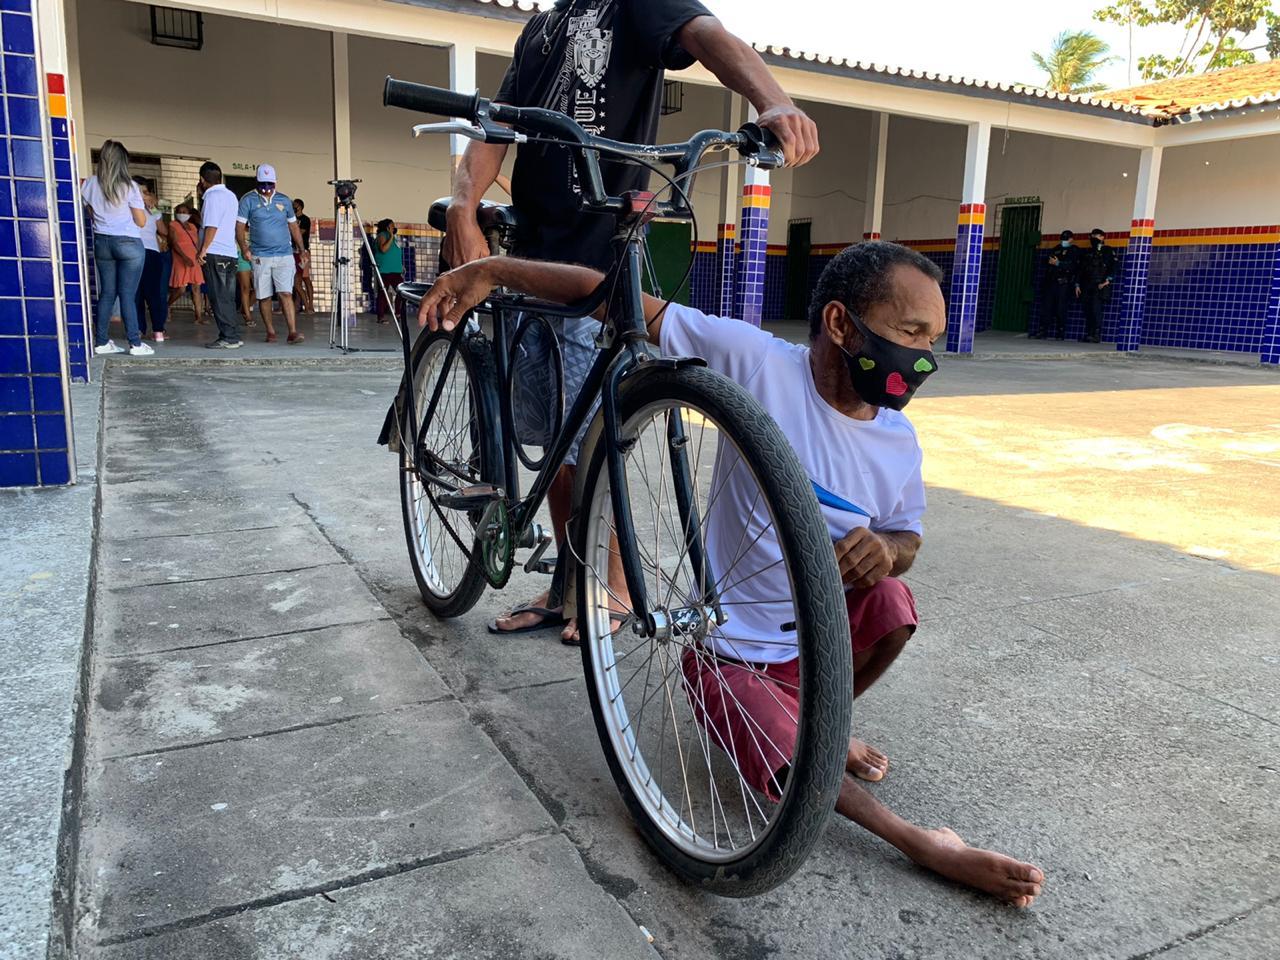 Eleitor com dificuldade de mobilidade sentado no chão ao lado da bicicleta do irmão